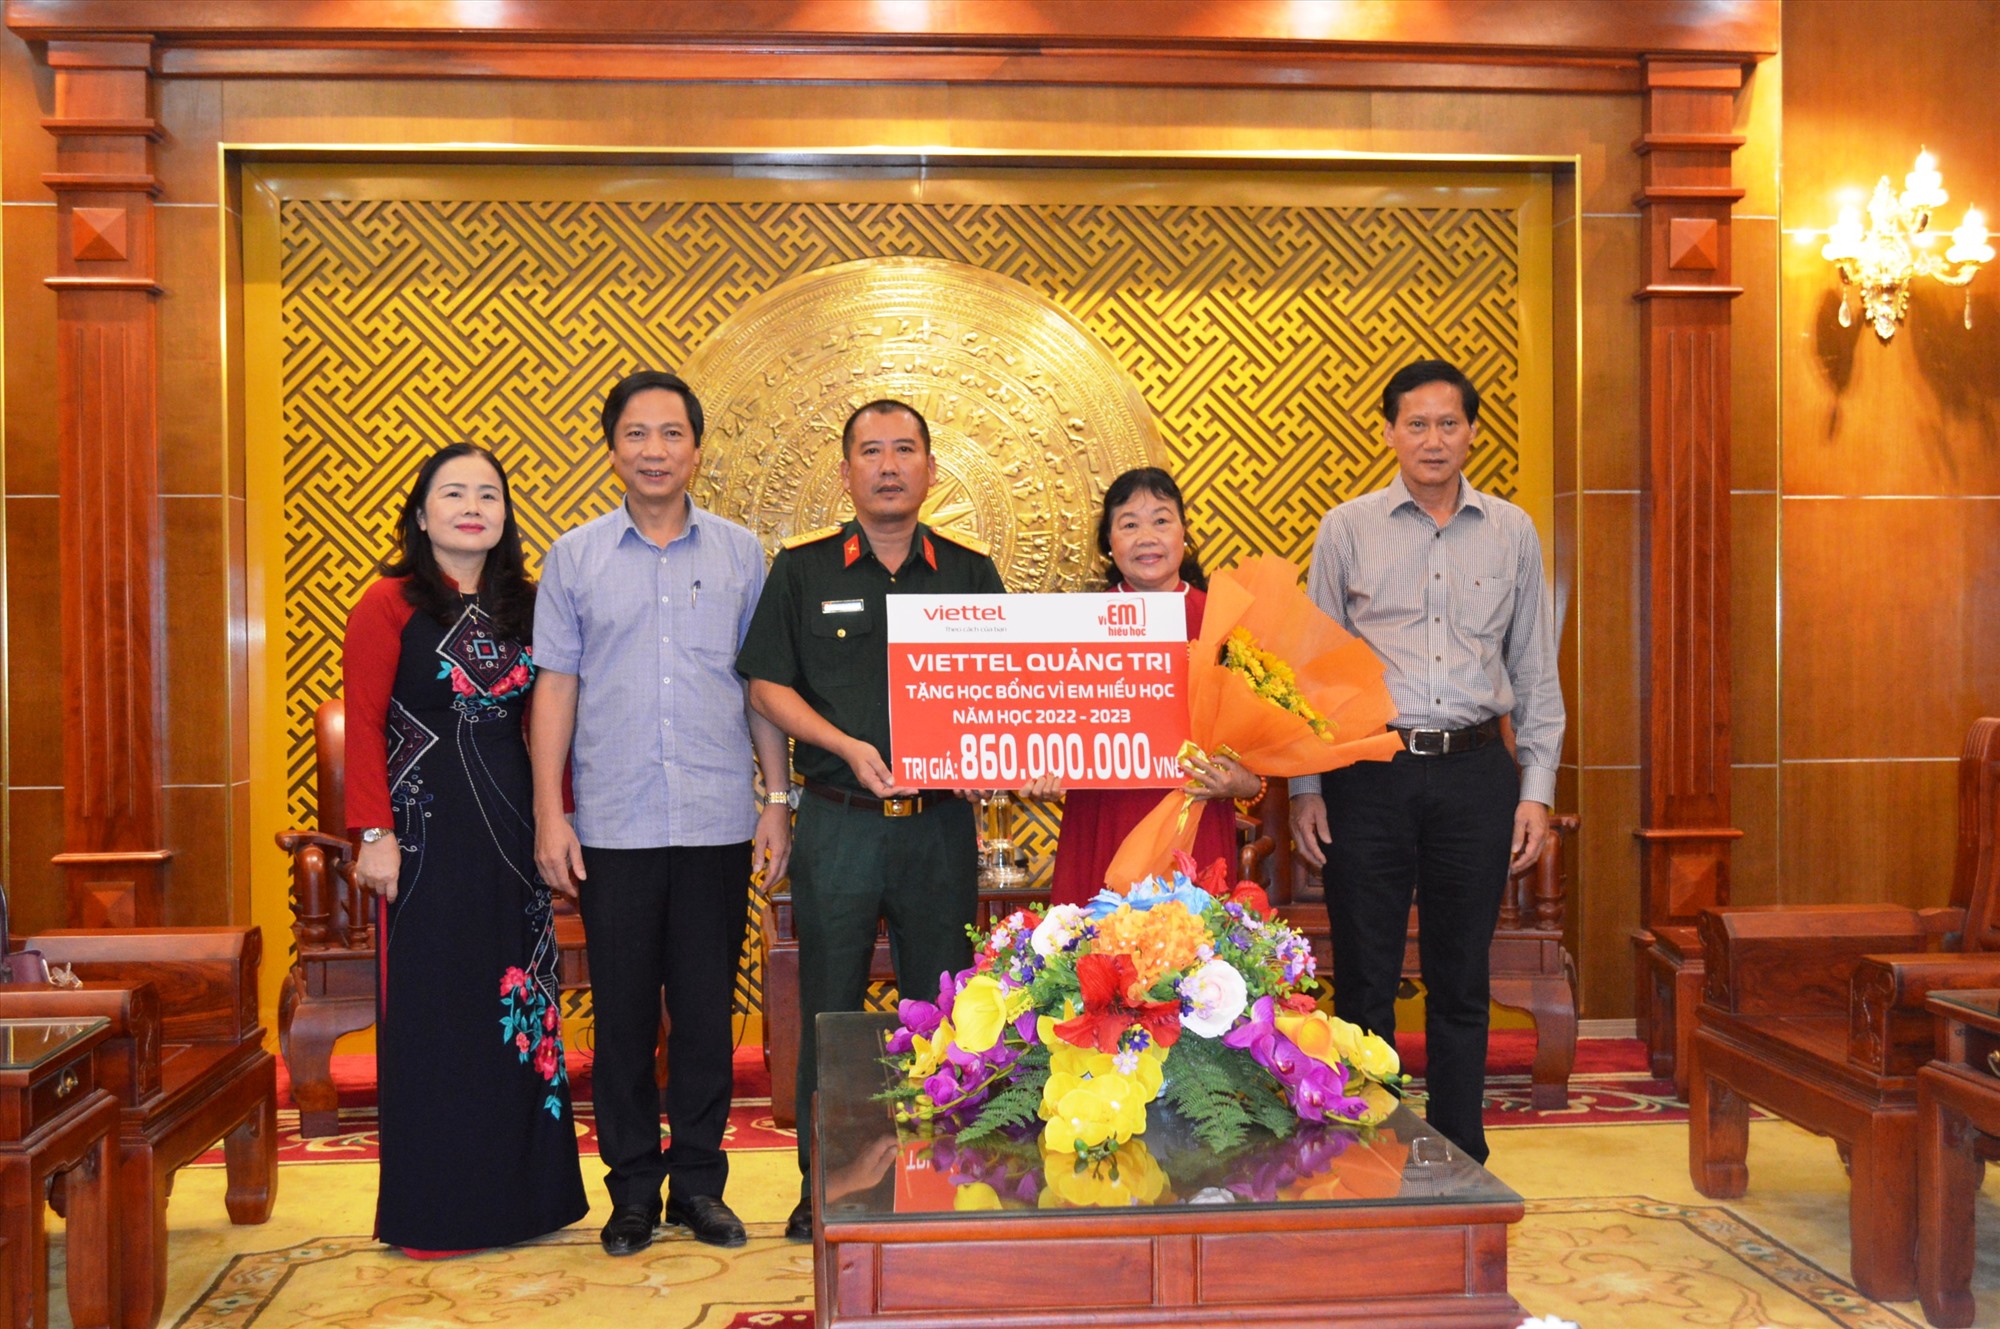 Đại diện Viettel Quảng Trị trao kinh phí học bổng “Vì em hiếu học” năm học 2022-2023 cho Hội Khuyến học tỉnh Quảng Trị - Ảnh: ĐV